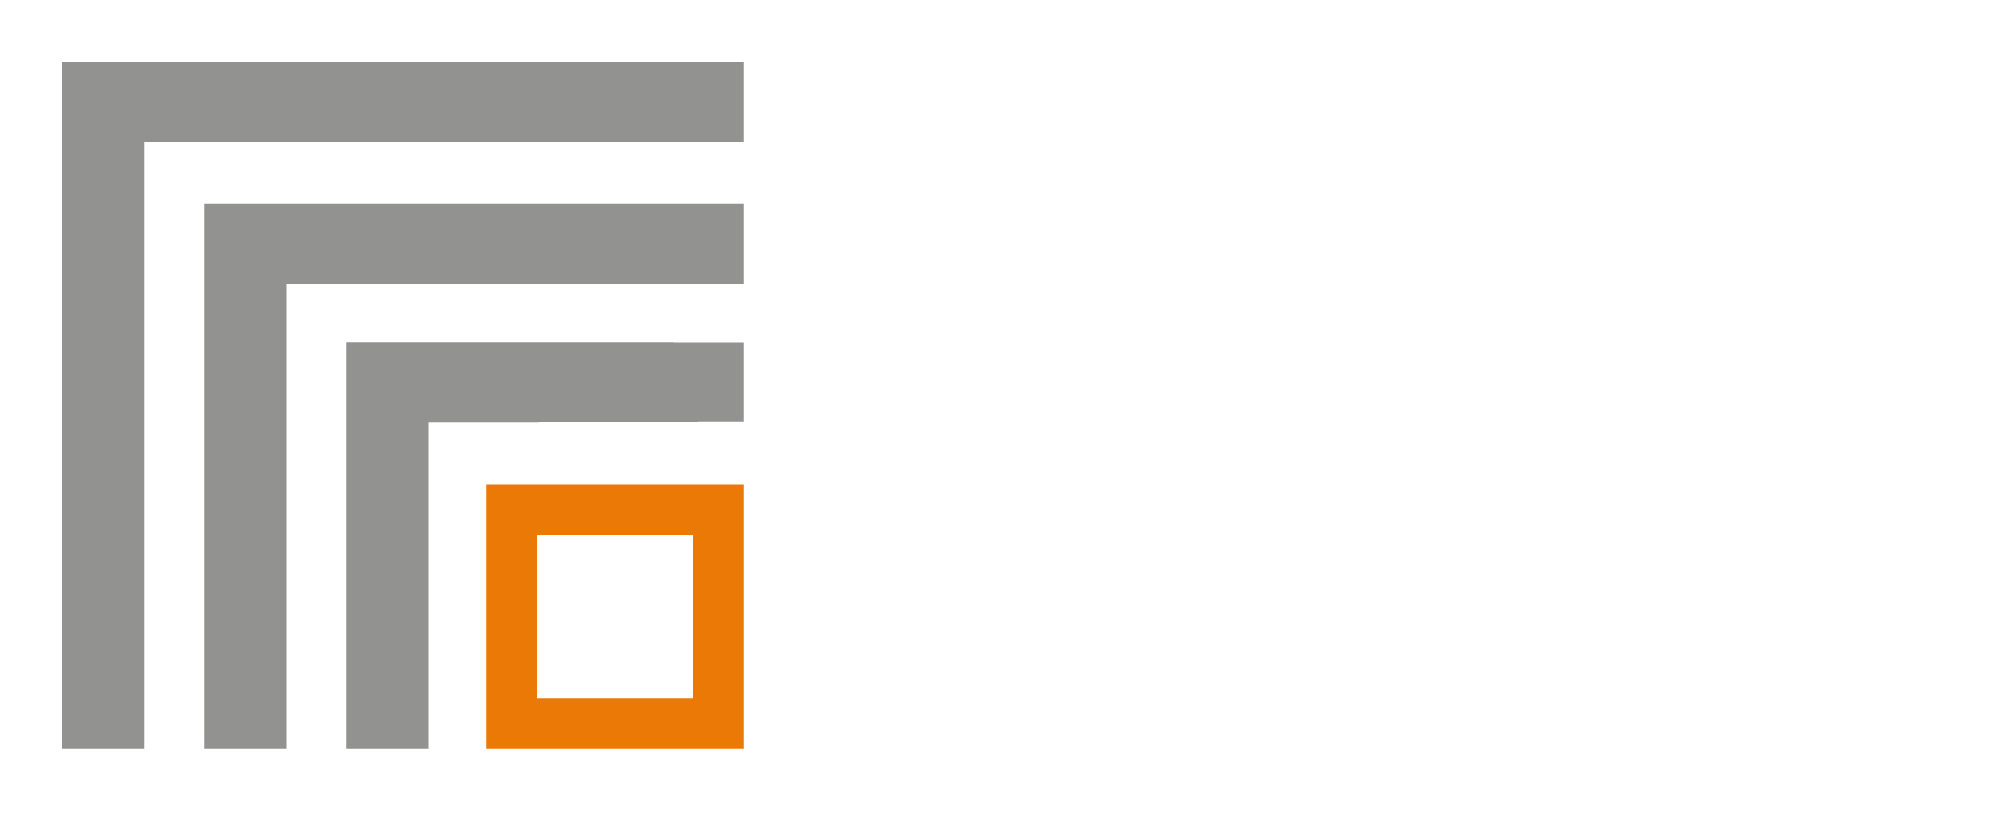 Fenech Farrugia Fiott Legal | A Leading Law Firm in Malta